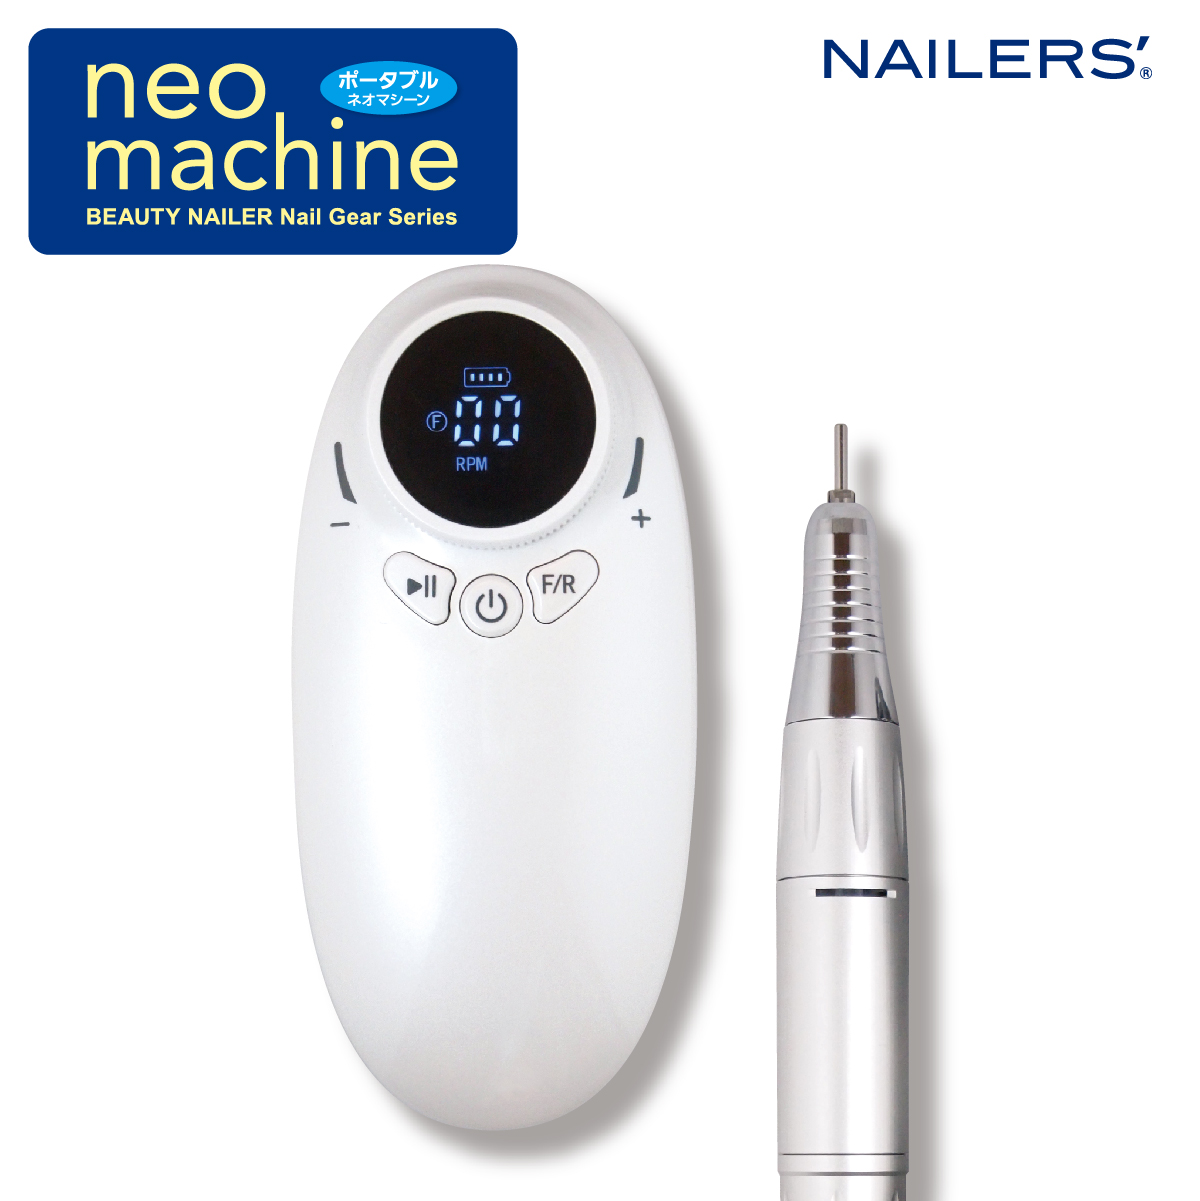 【お試しレンタル】NAILERS' neo machine ポータブル ネオマシーン(NM-1)画像